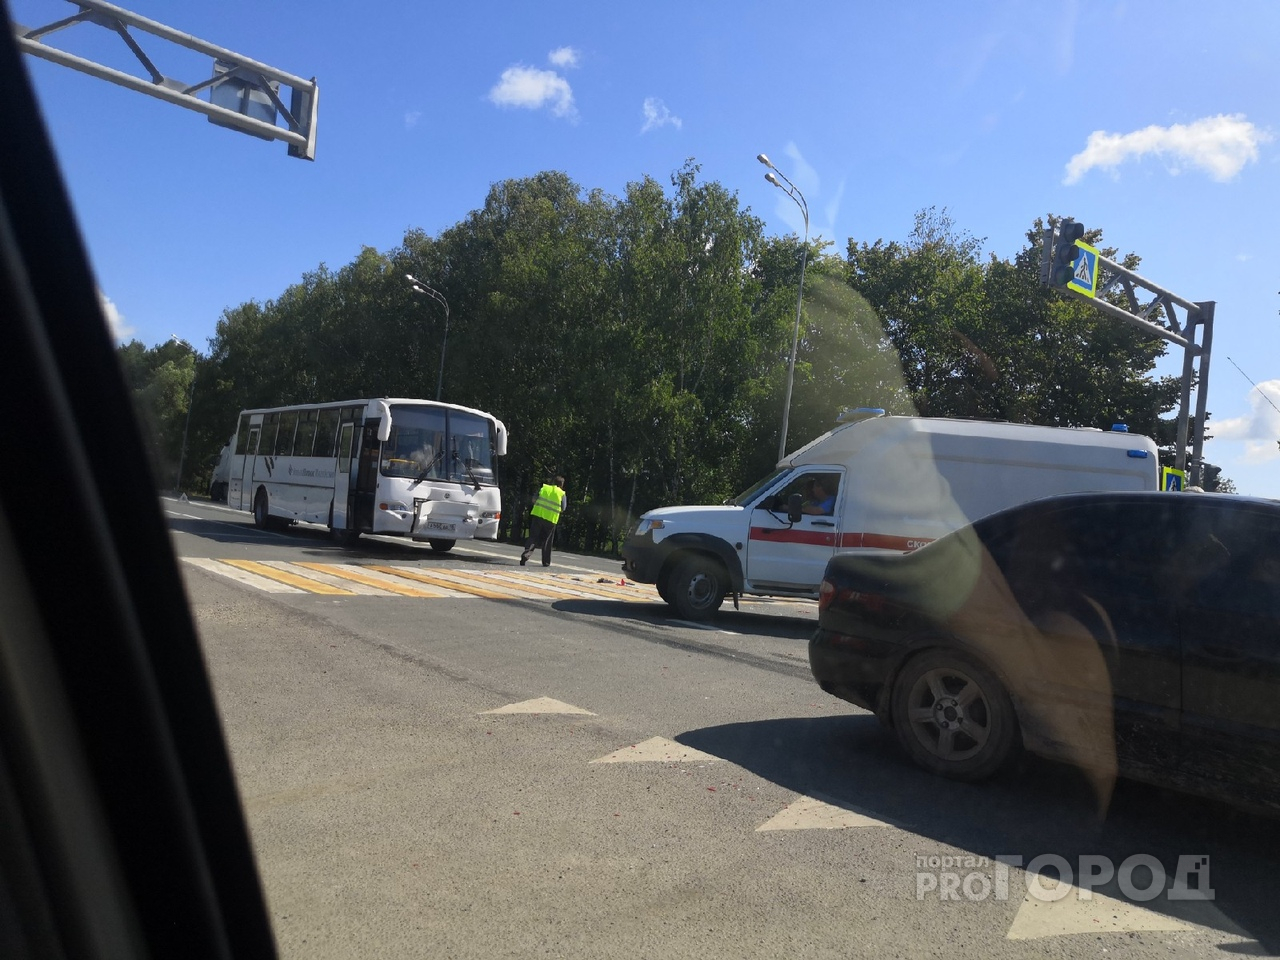 Появились подробности аварии на трассе Марий Эл, где автобус влетел во внедорожник